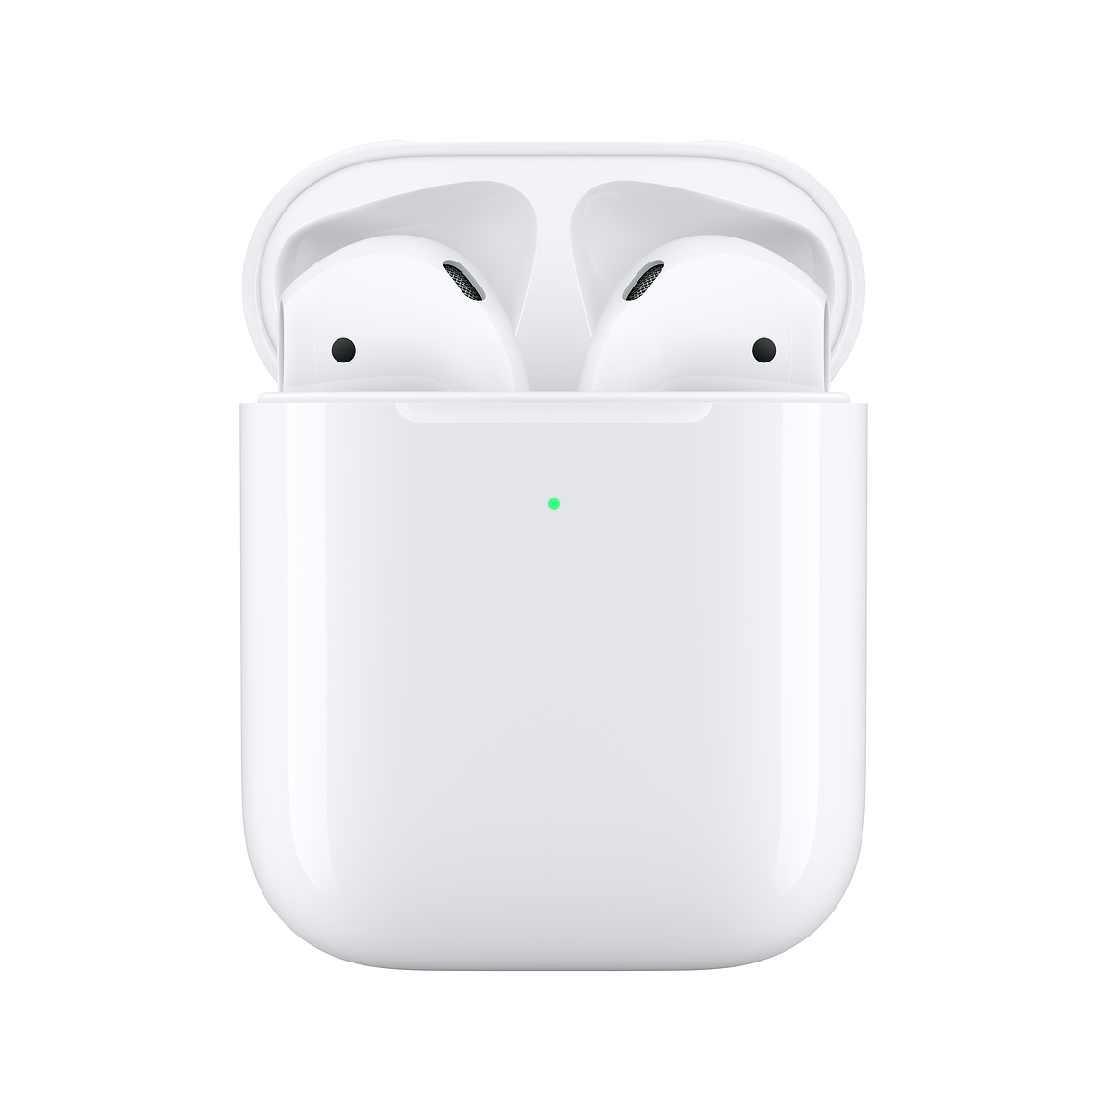 Appleが、新型のワイヤレスイヤホン「AirPods（エアポッド）」を発表した。